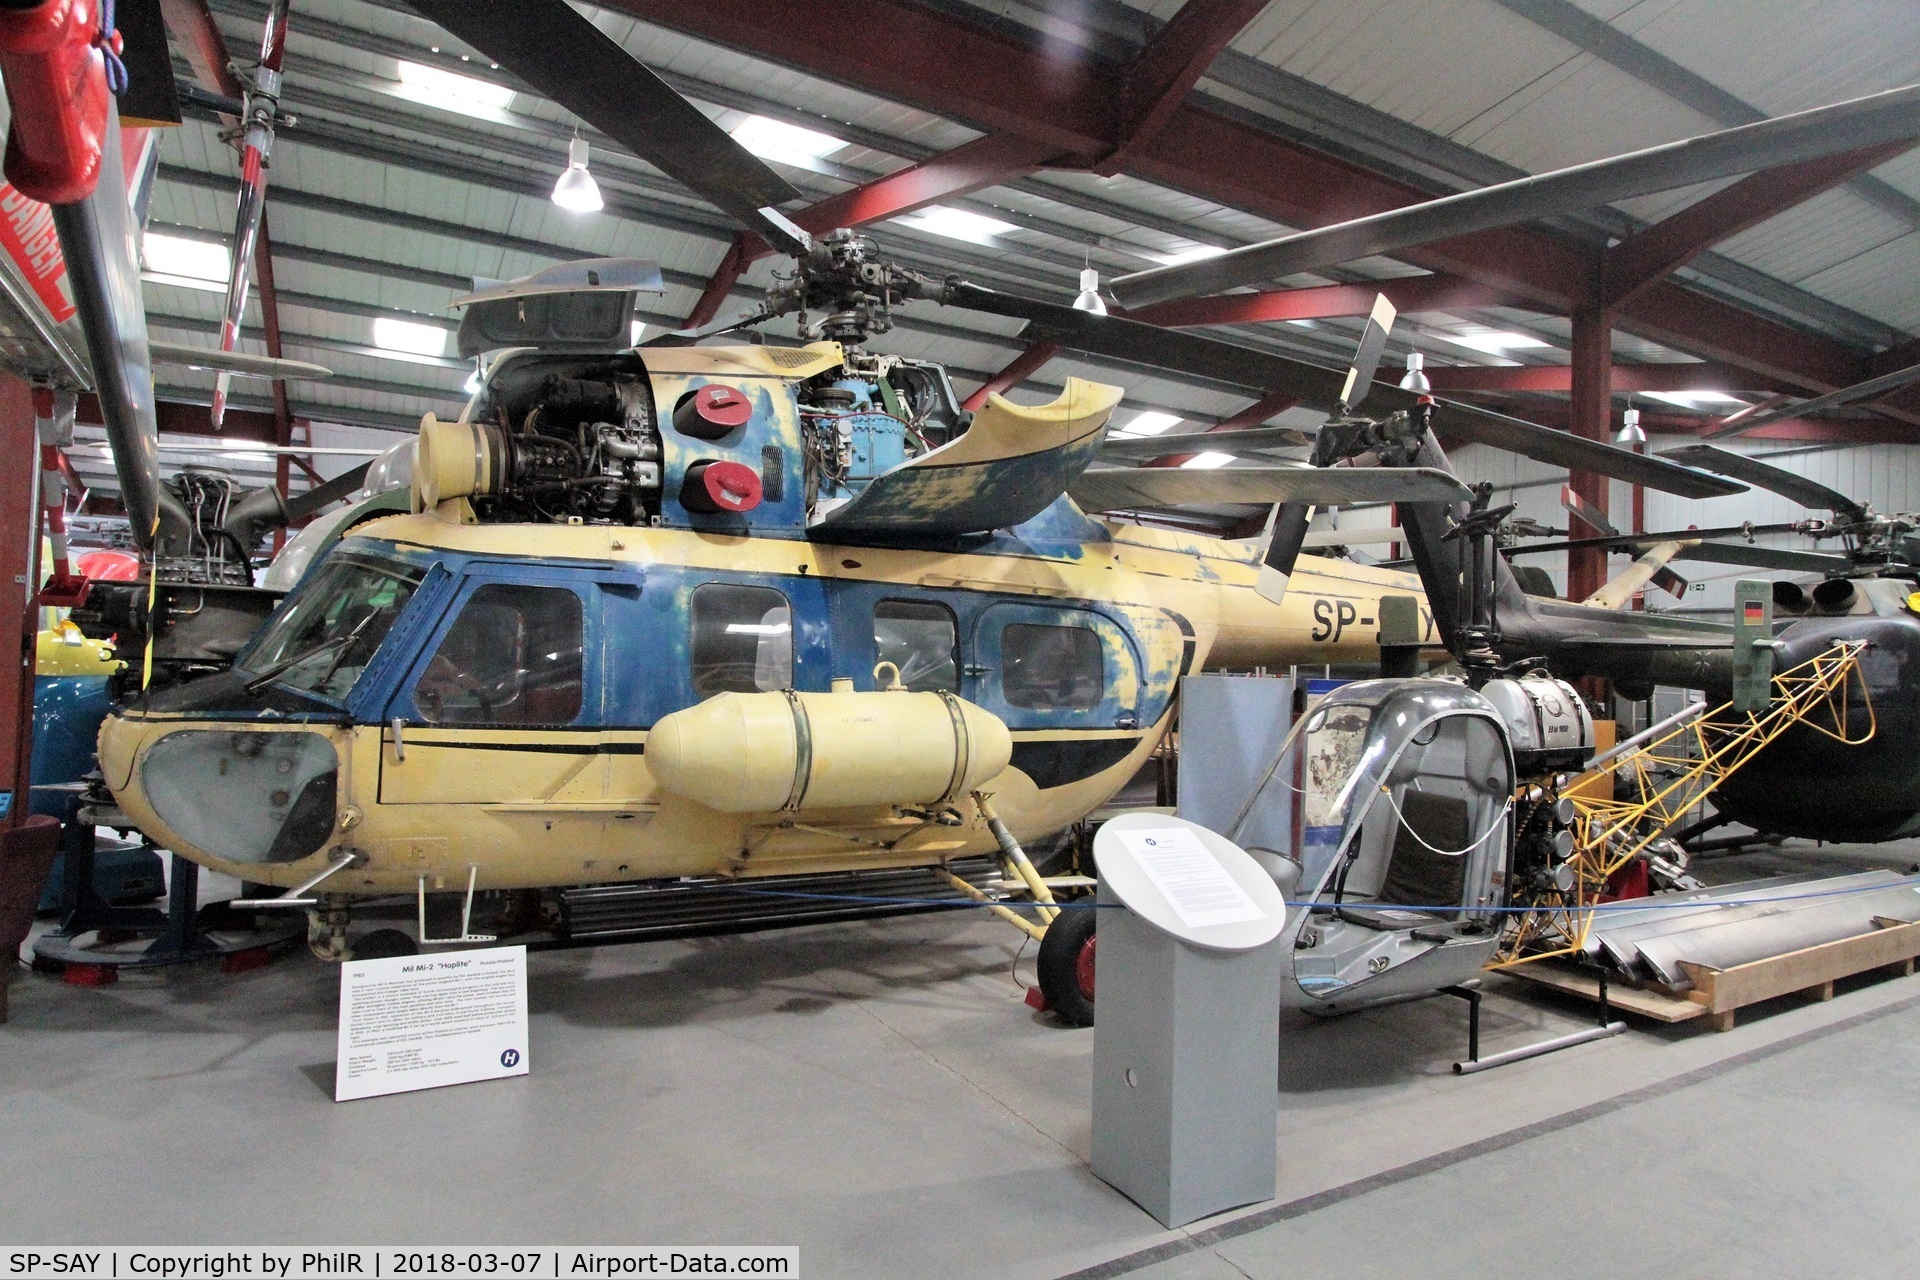 SP-SAY, 1985 PZL-Swidnik Mi-2 C/N 529538125, SP-SAY 1985 Mil (PZL Swidnik) Mi-2 Helicopter Museum